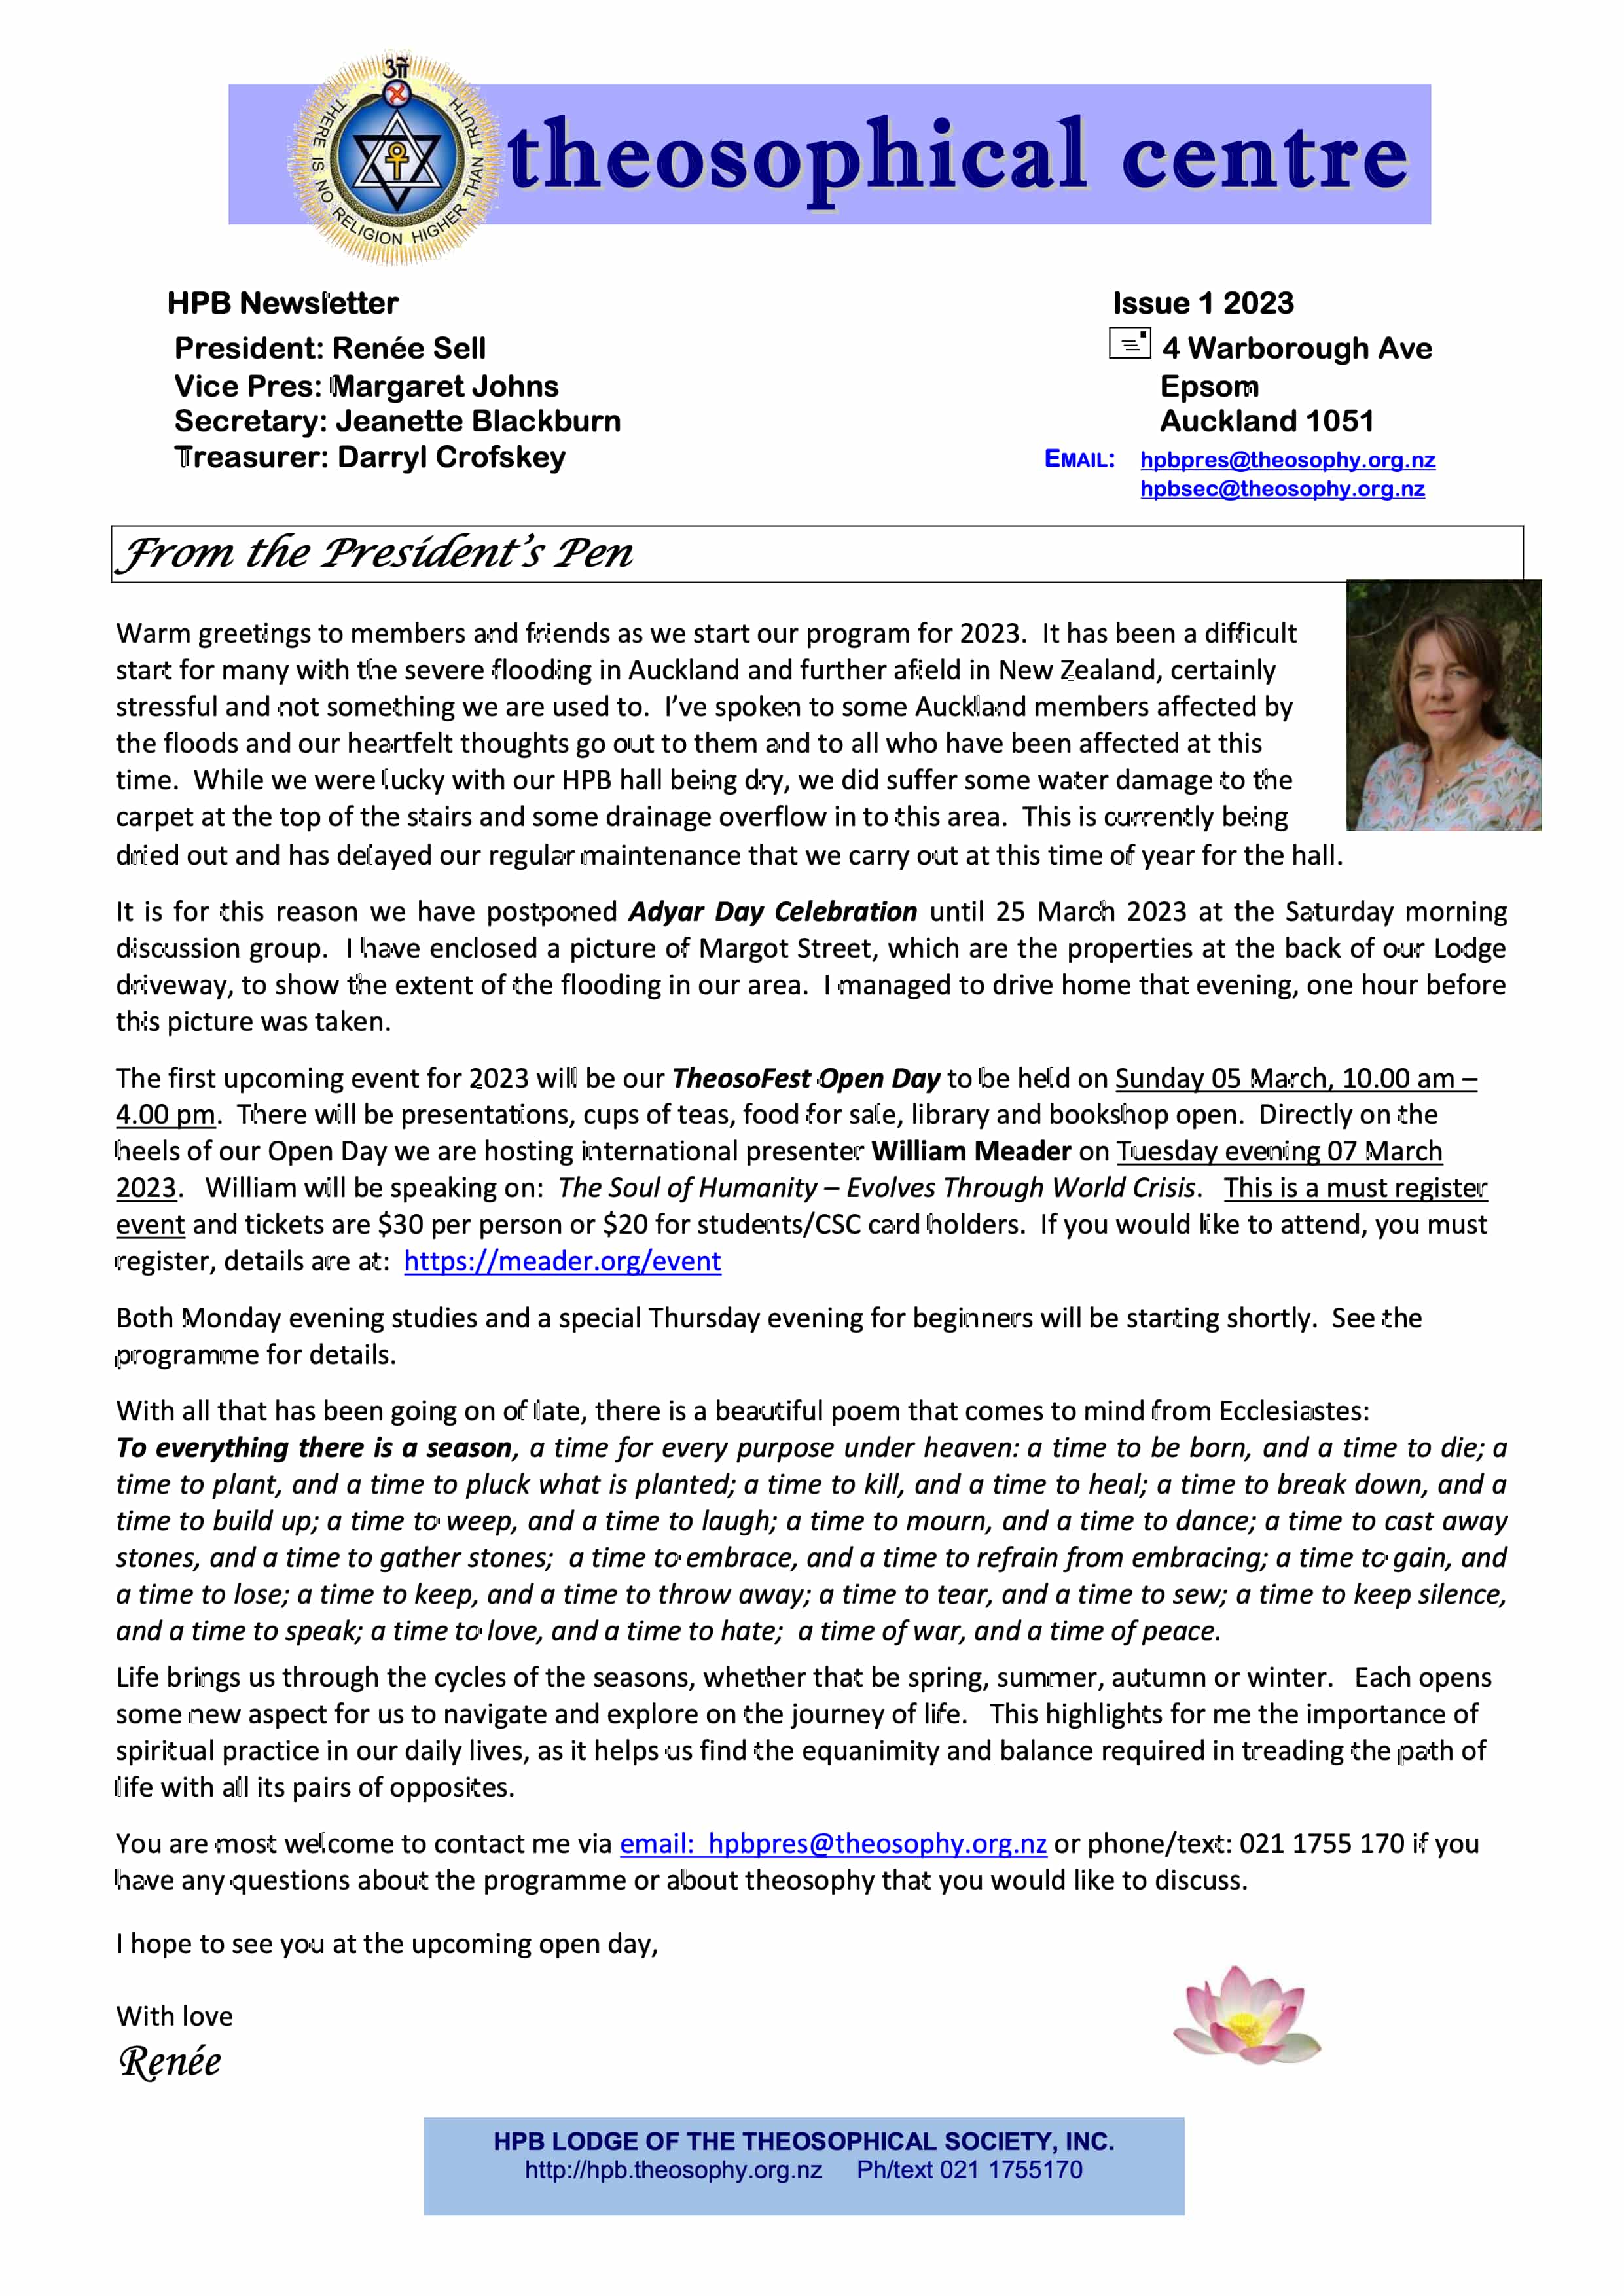 HPB 2023 Newsletter Issue 1 - Feb 2023.jpg